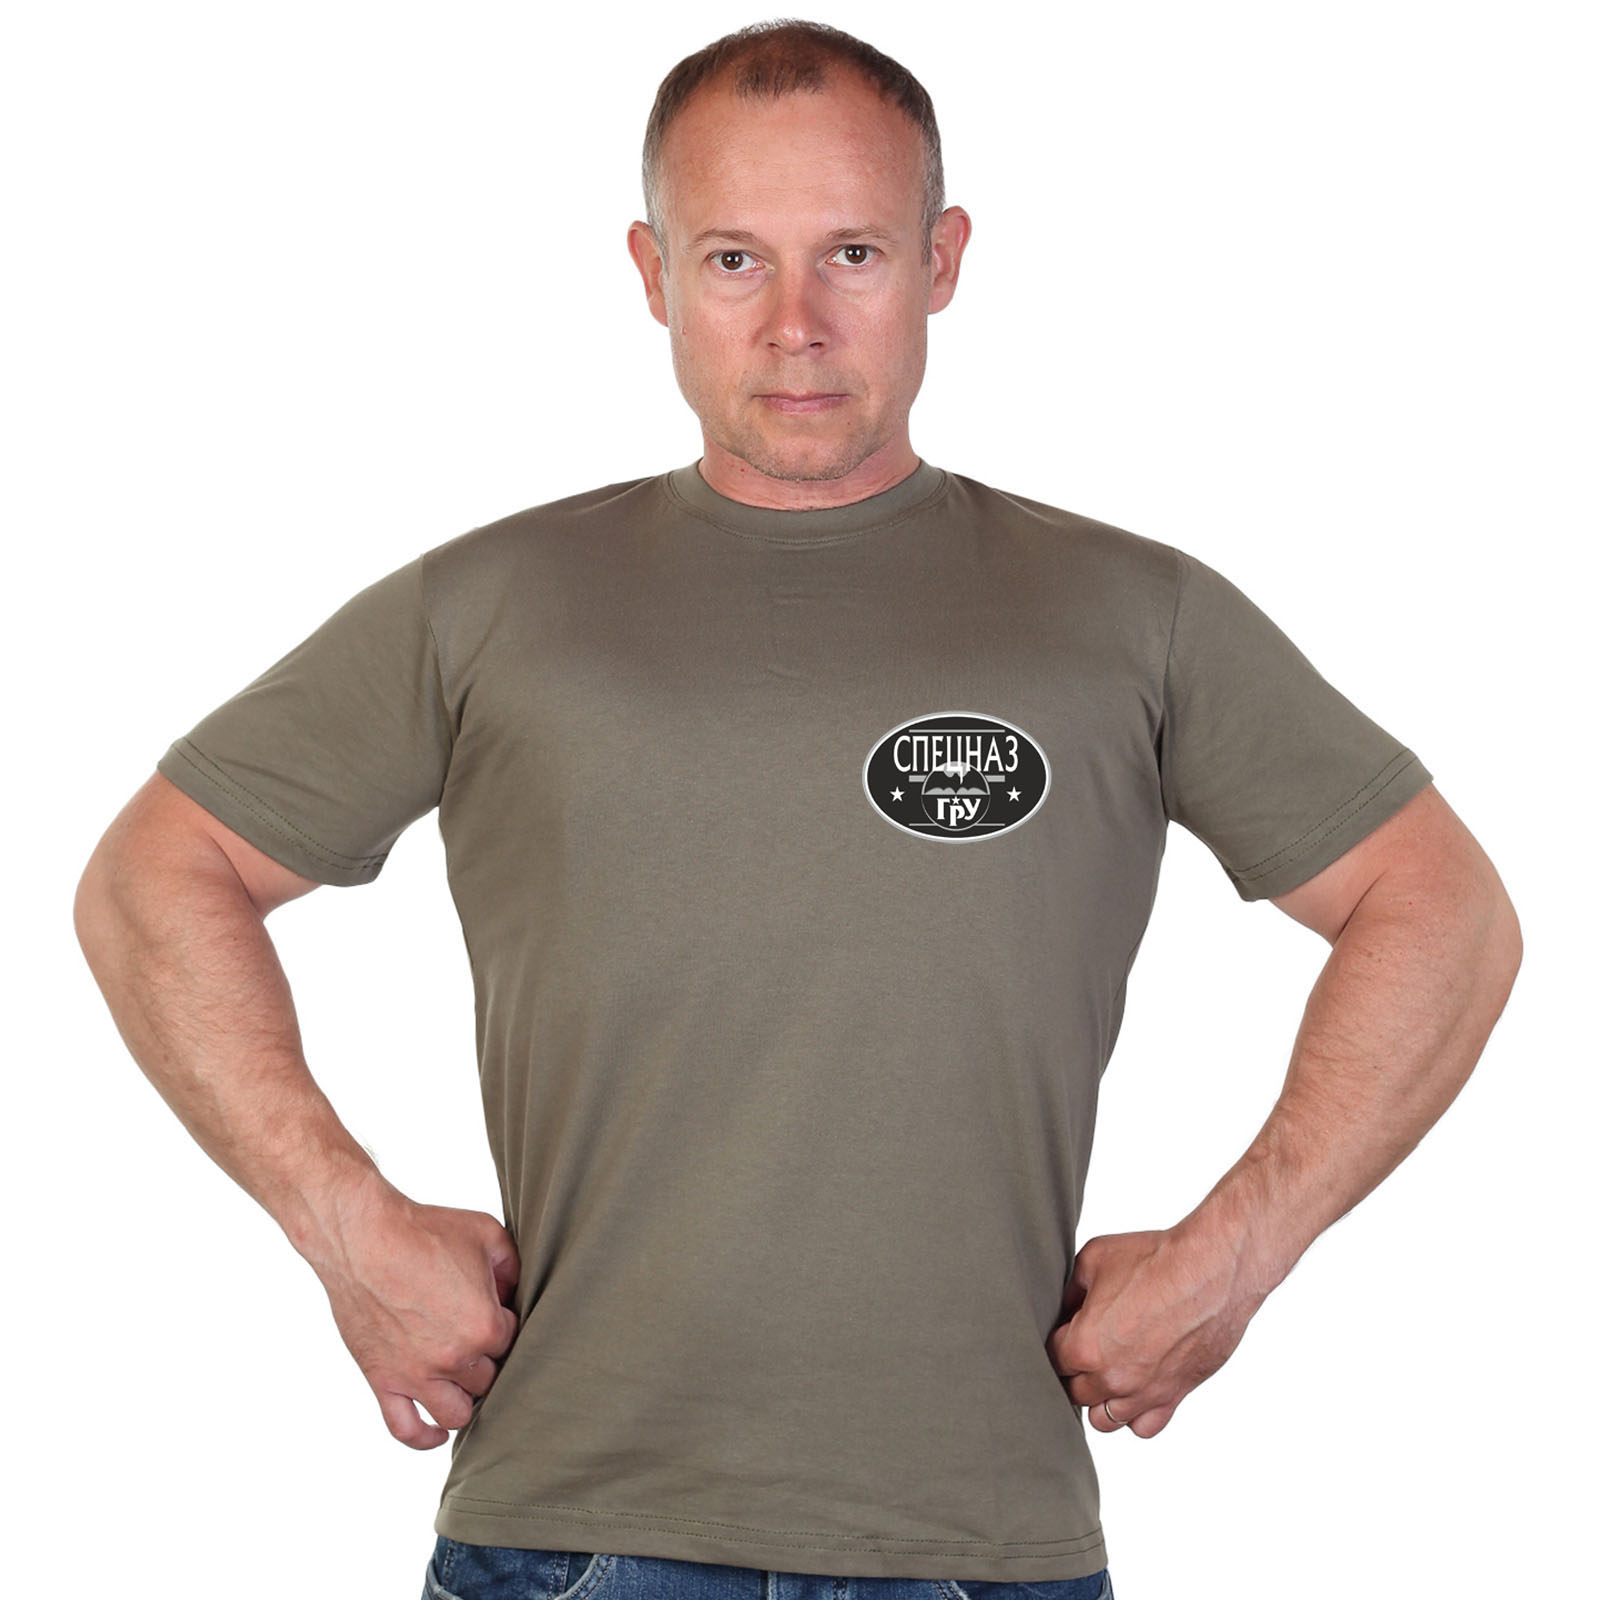 Оливковая футболка с термотрансфером "Спецназ ГРУ" 